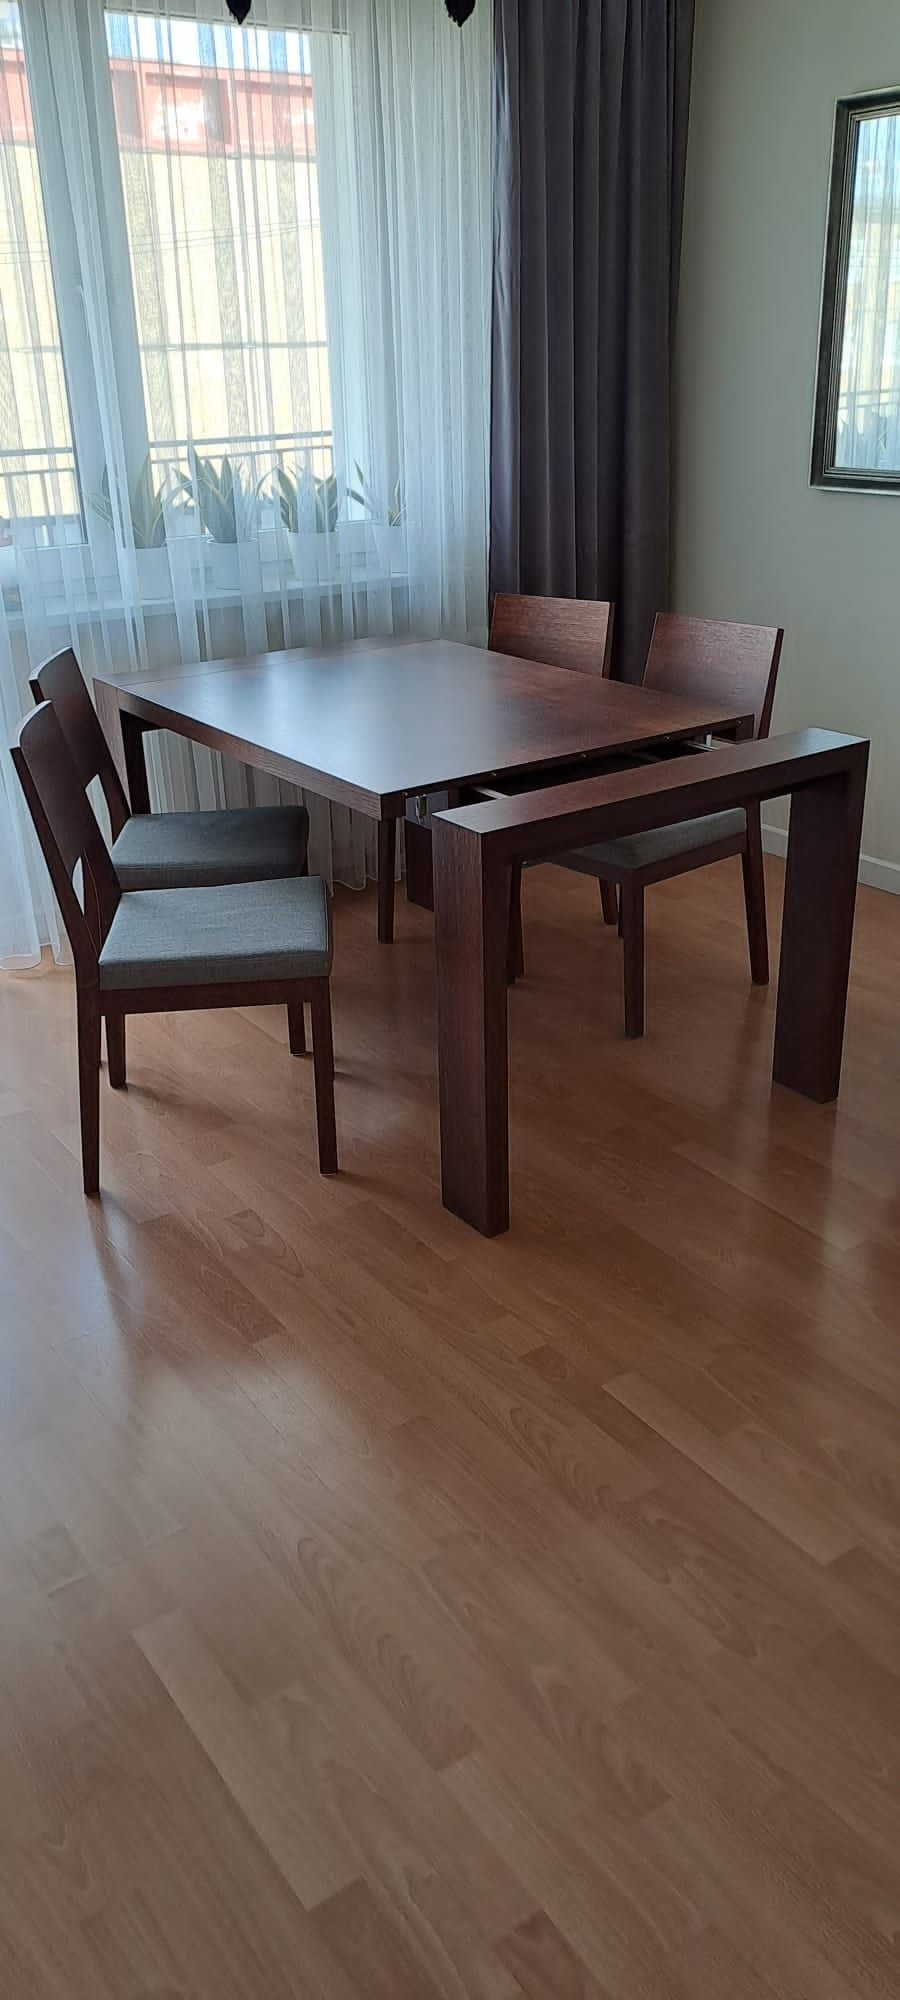 Stół z krzesłami do salonu, praktycznie nowy